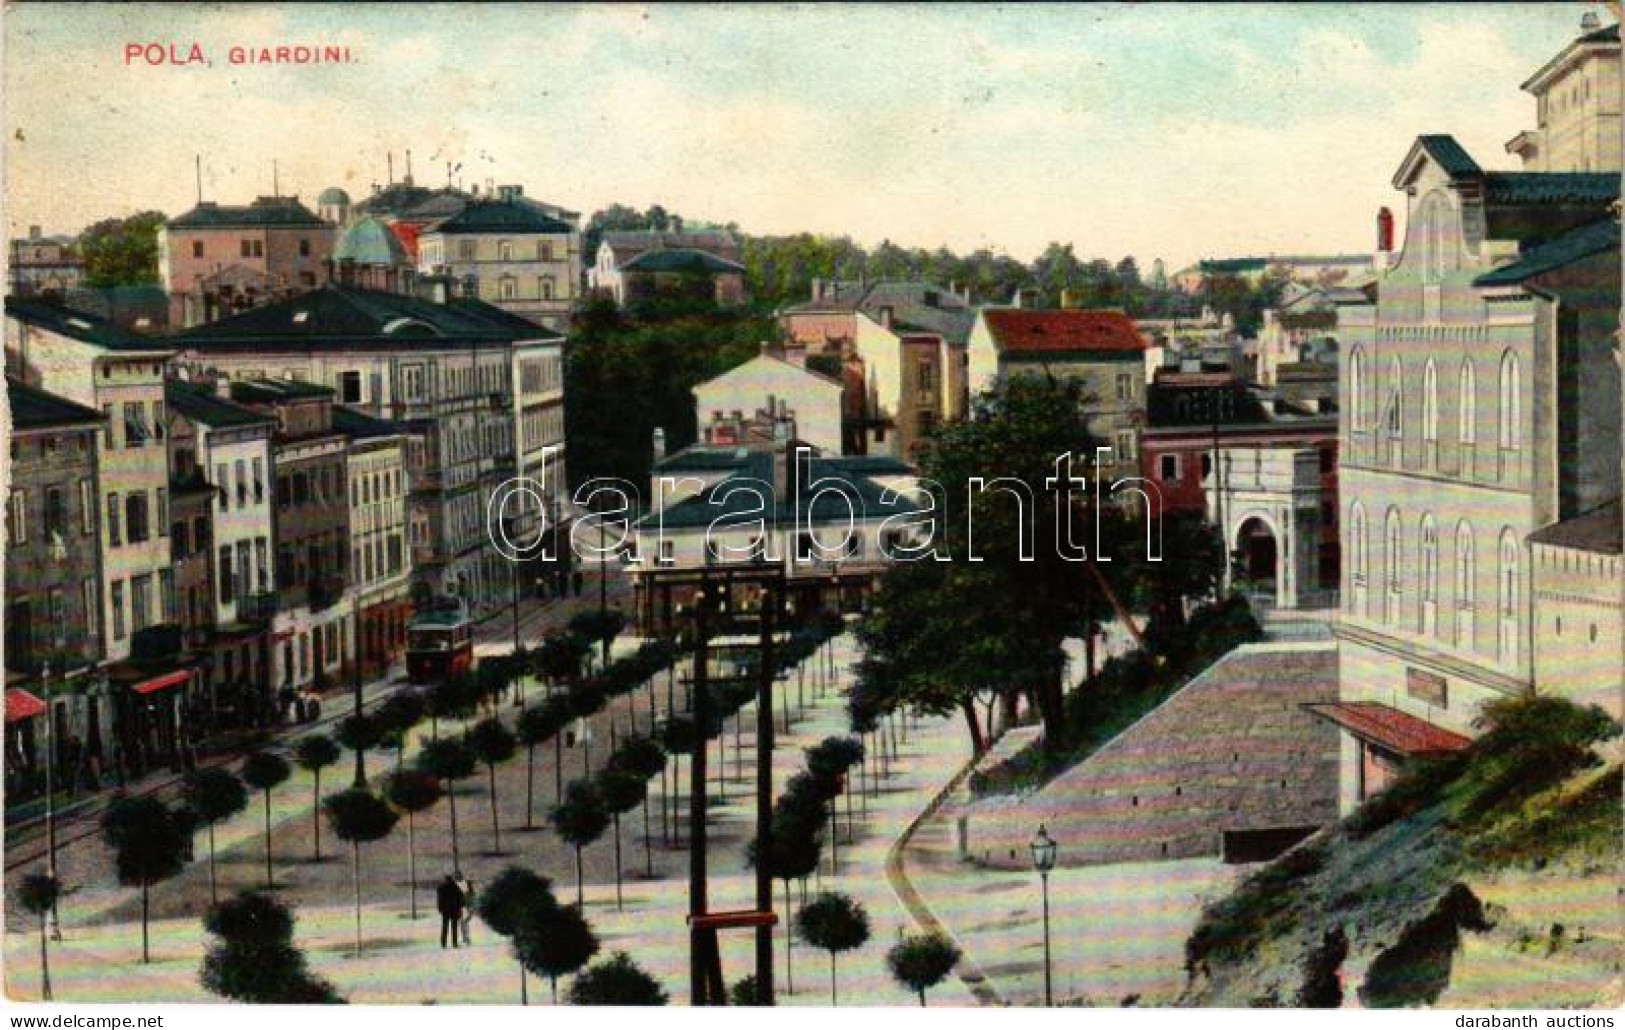 T2/T3 1909 Pola, Pula; Giardini / Square, Tram. G. Fano, POla, 1908/9. No. 7. (Rb) - Sin Clasificación